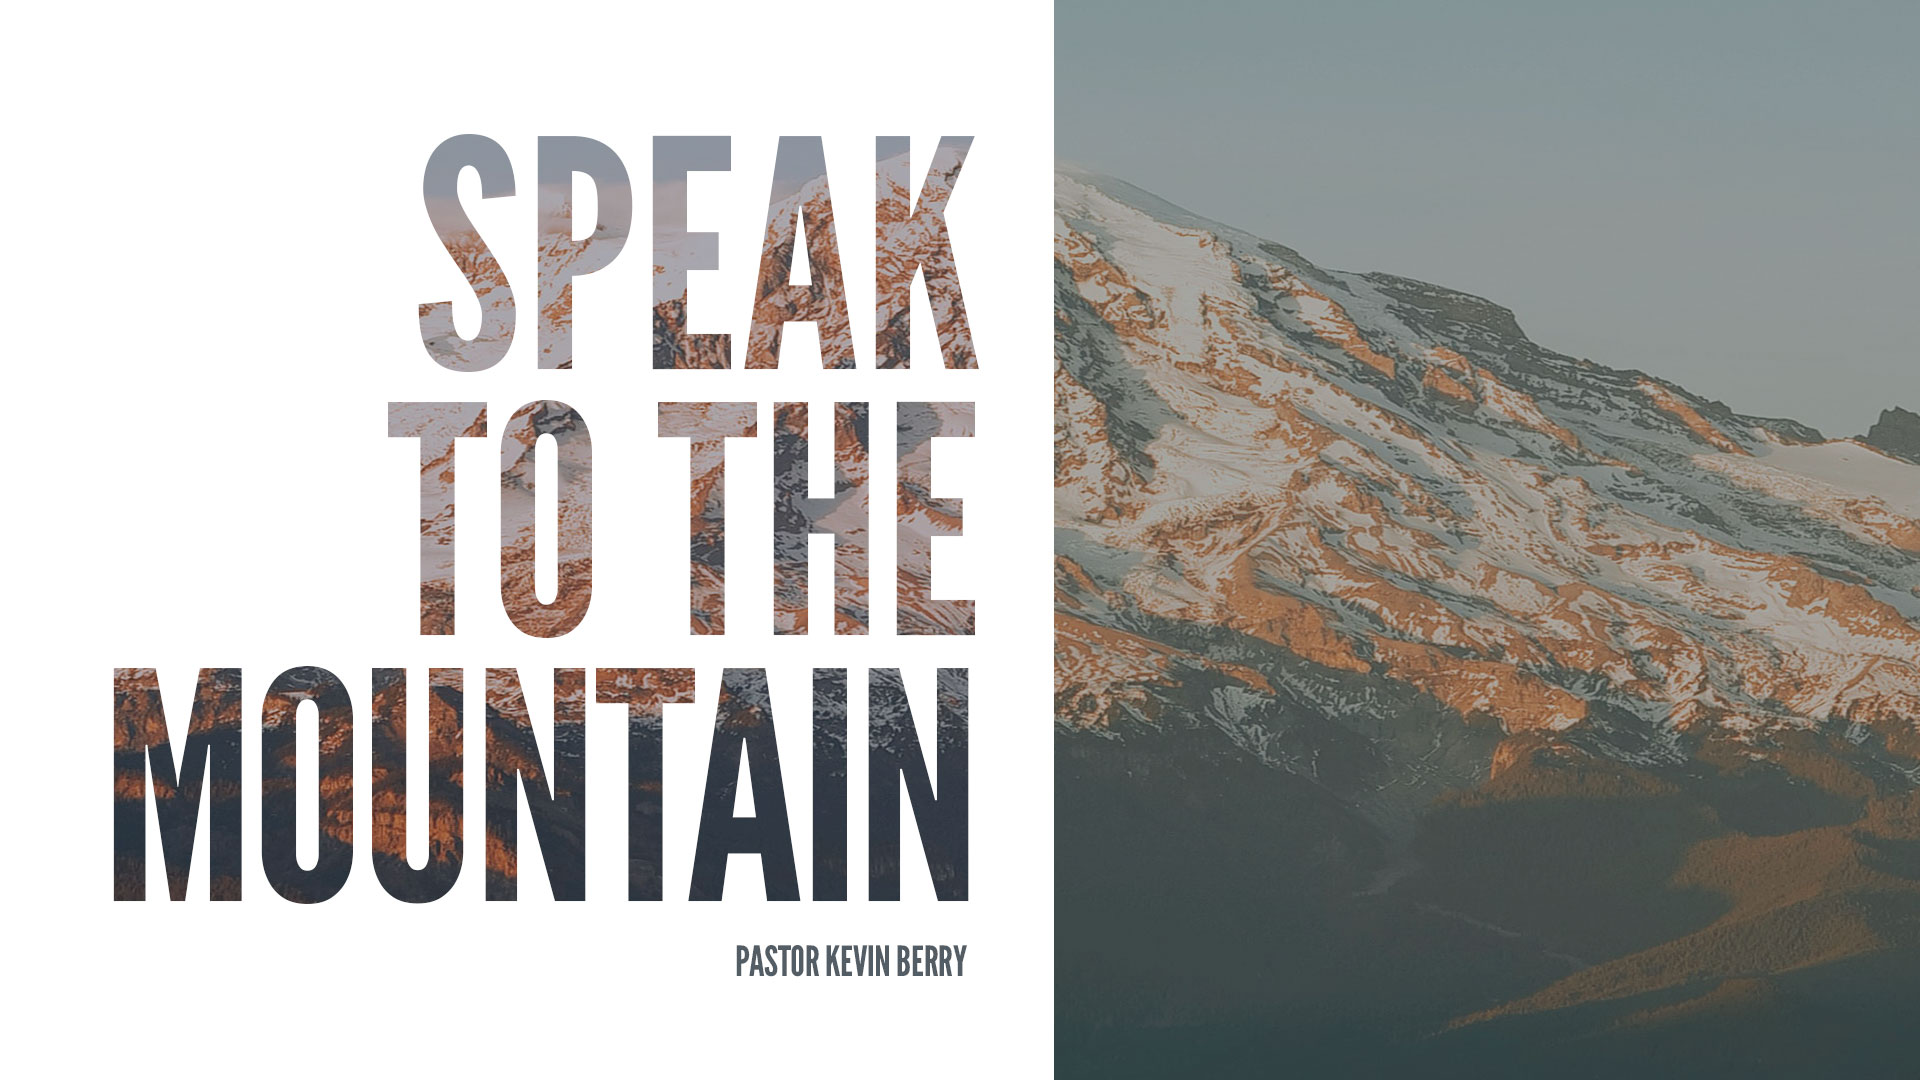 Speak To The Mountain